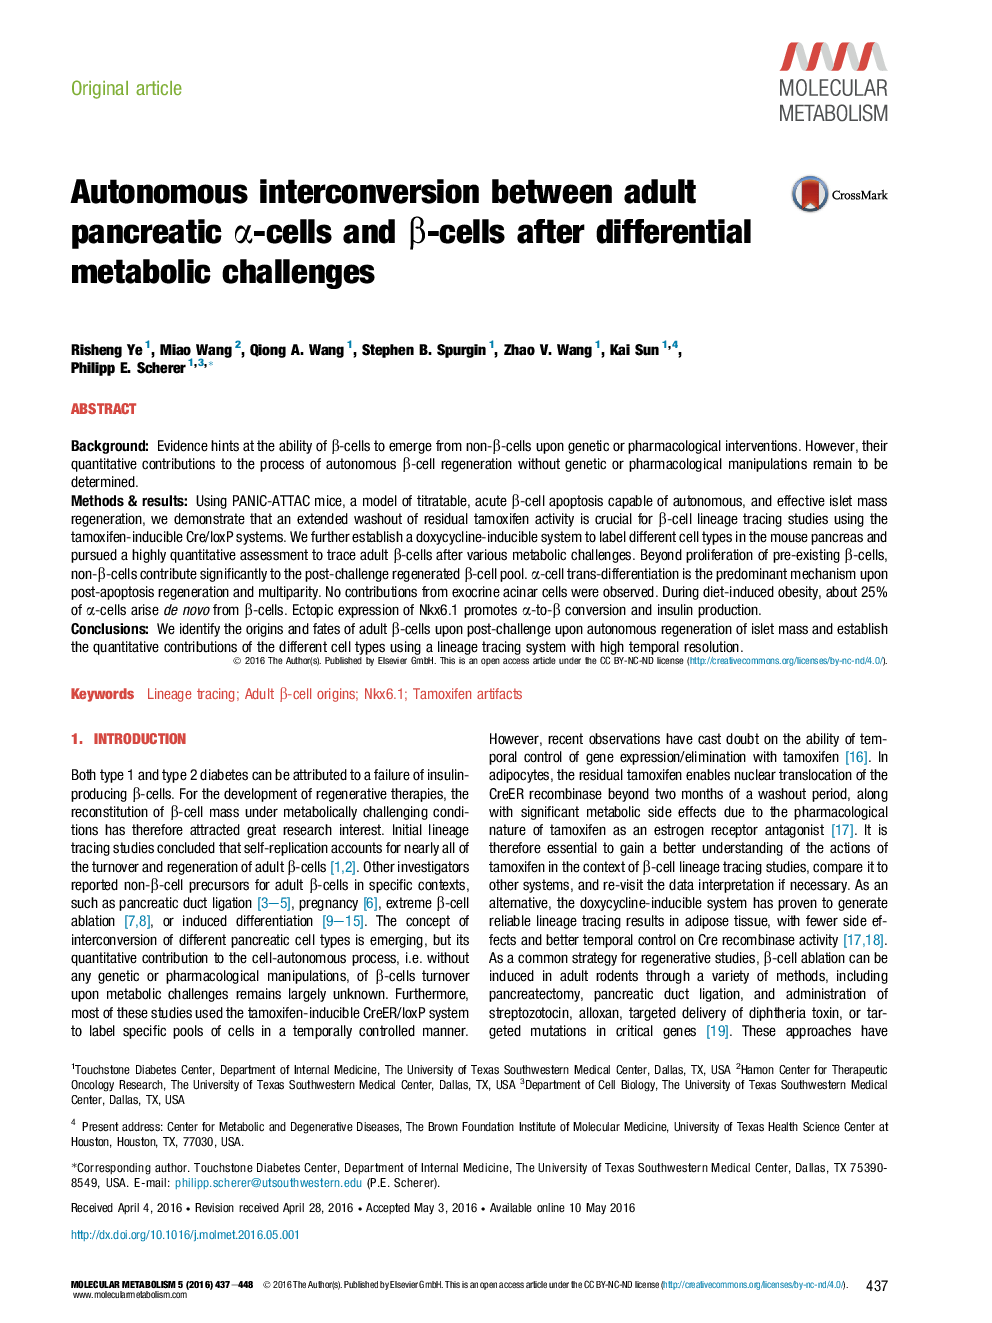 تعامل مستقل بین سلول های α-پانکراس بالغ و β-سلول ها پس از چالش های متابولیسم دیفرانسیل